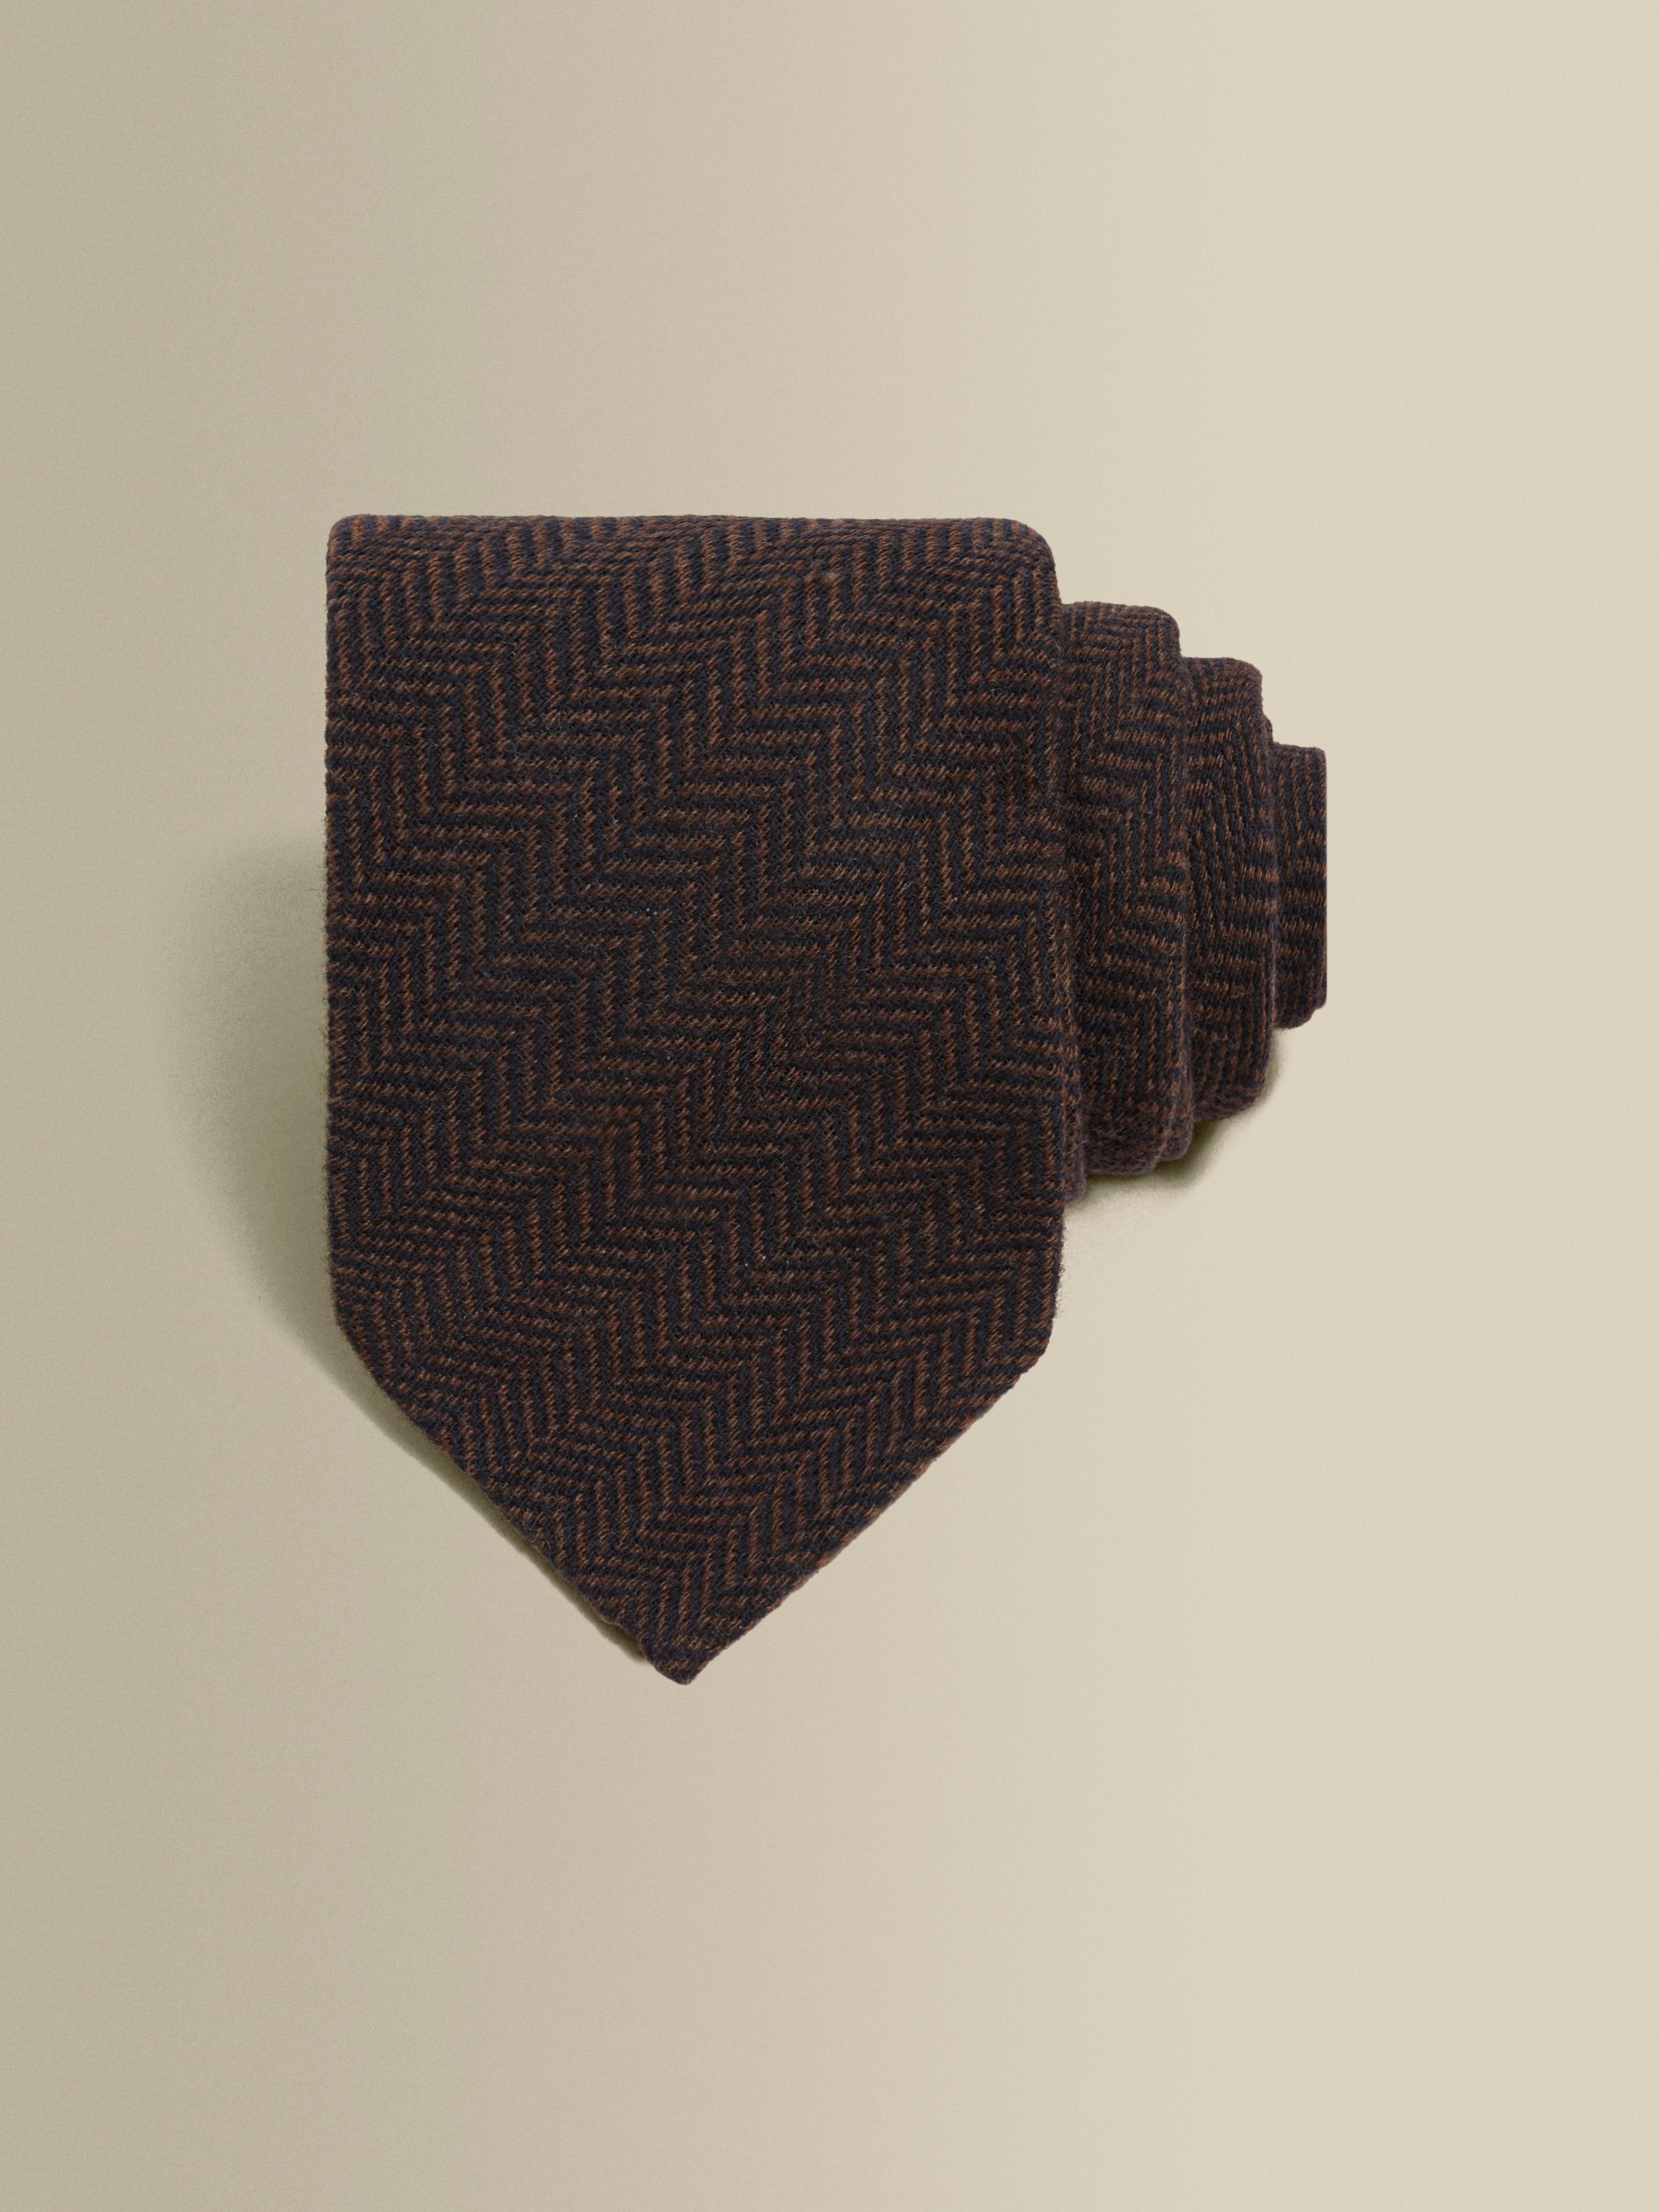 Wool Herringbone Tie Brown Product Image